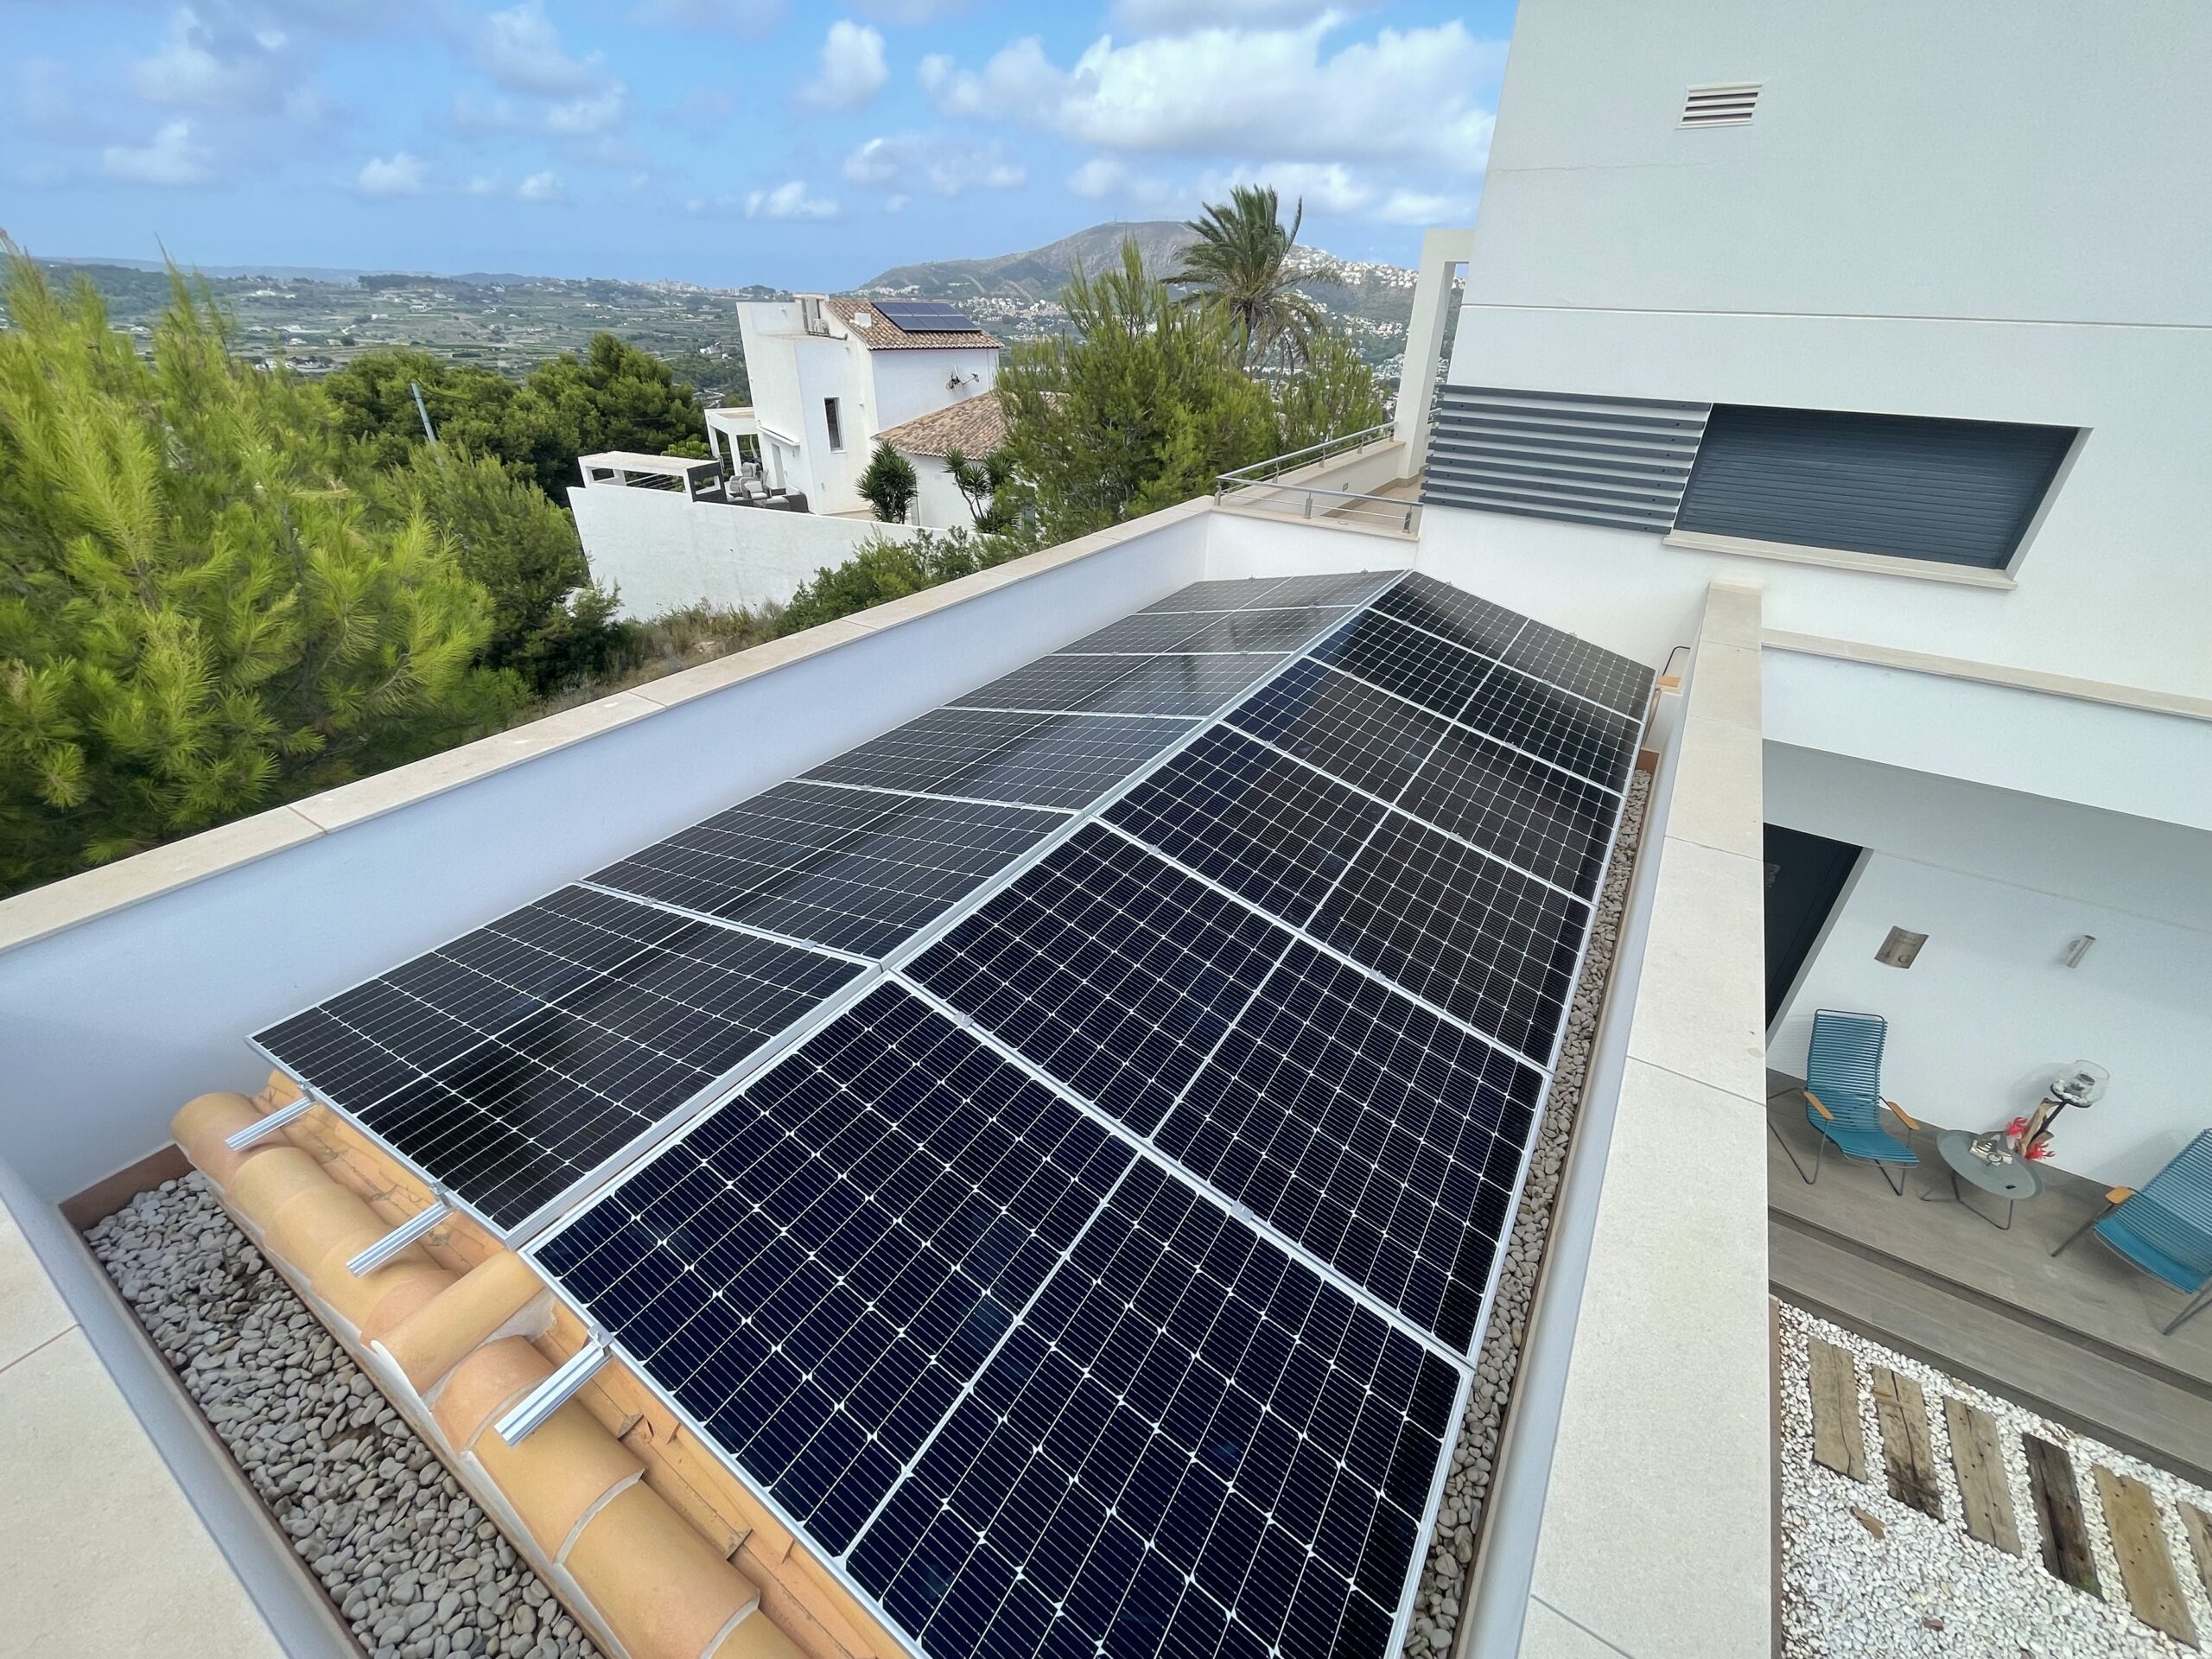 12X 385 wp Paneles Solares, Teulada, Alicante (Sistema híbrido)